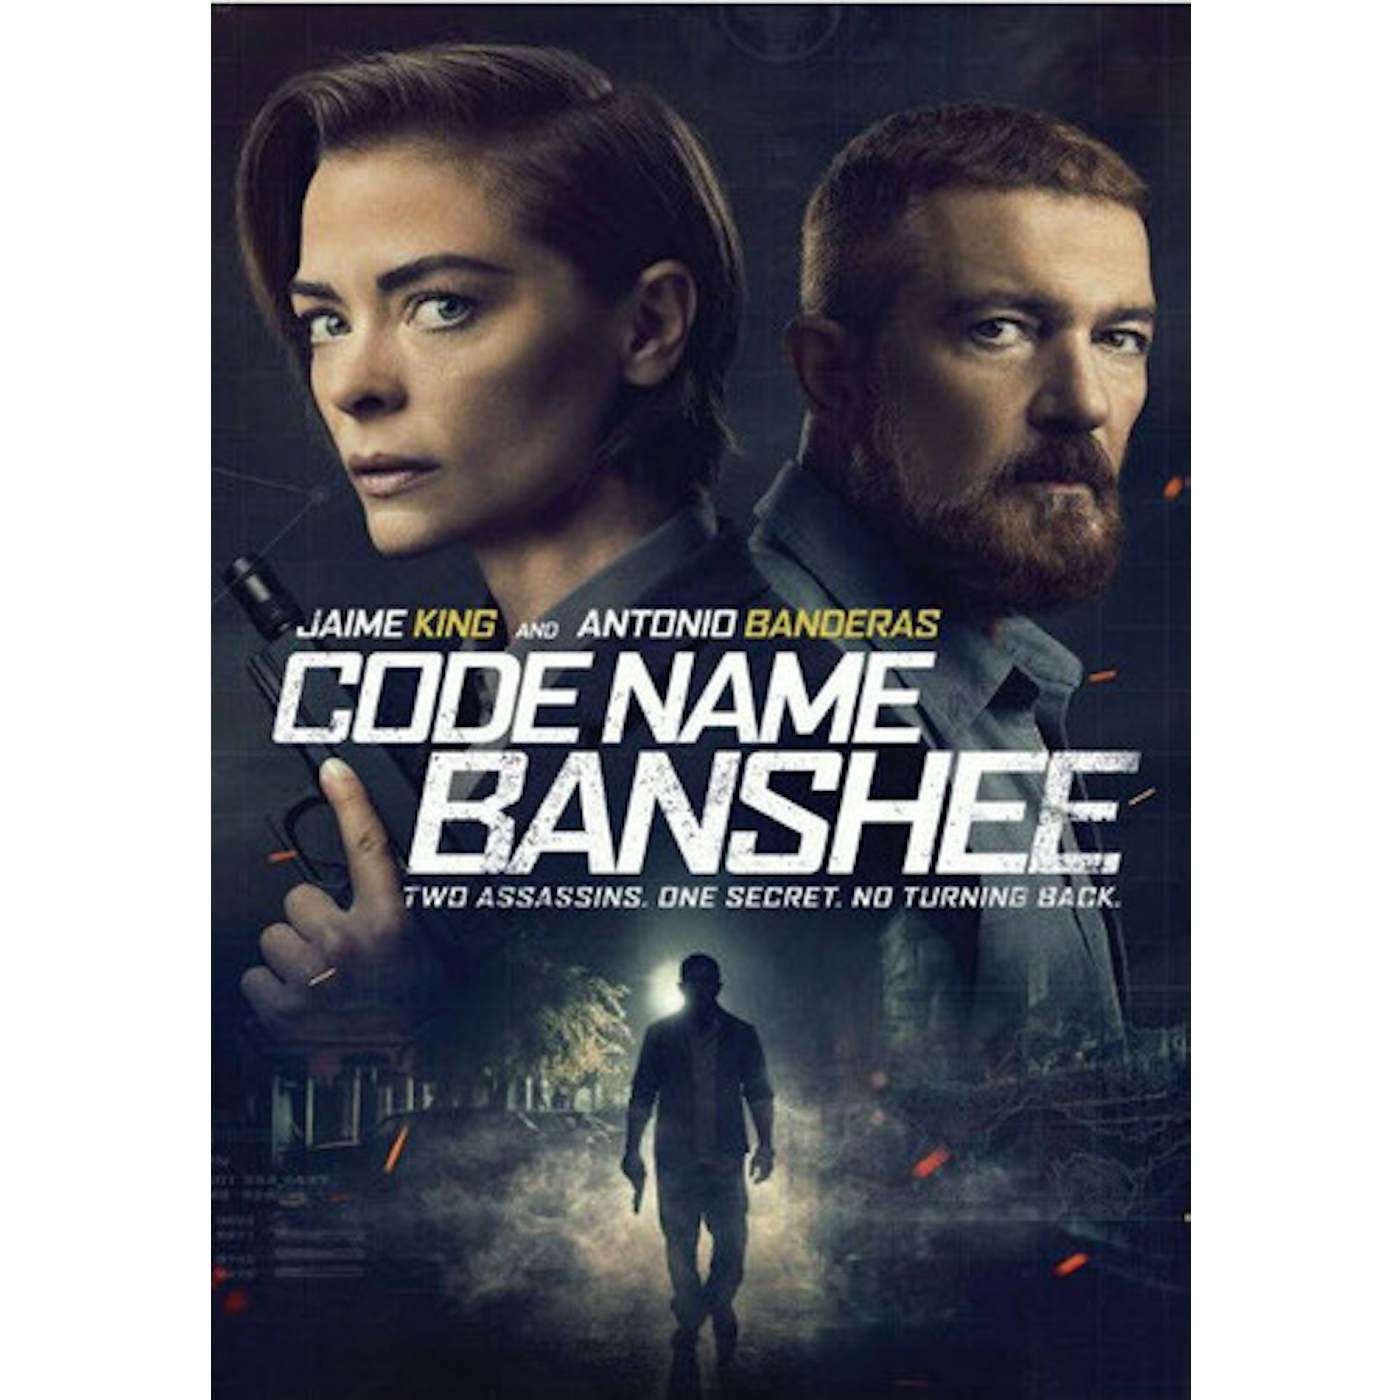 CODENAME BANSHEE Blu-ray